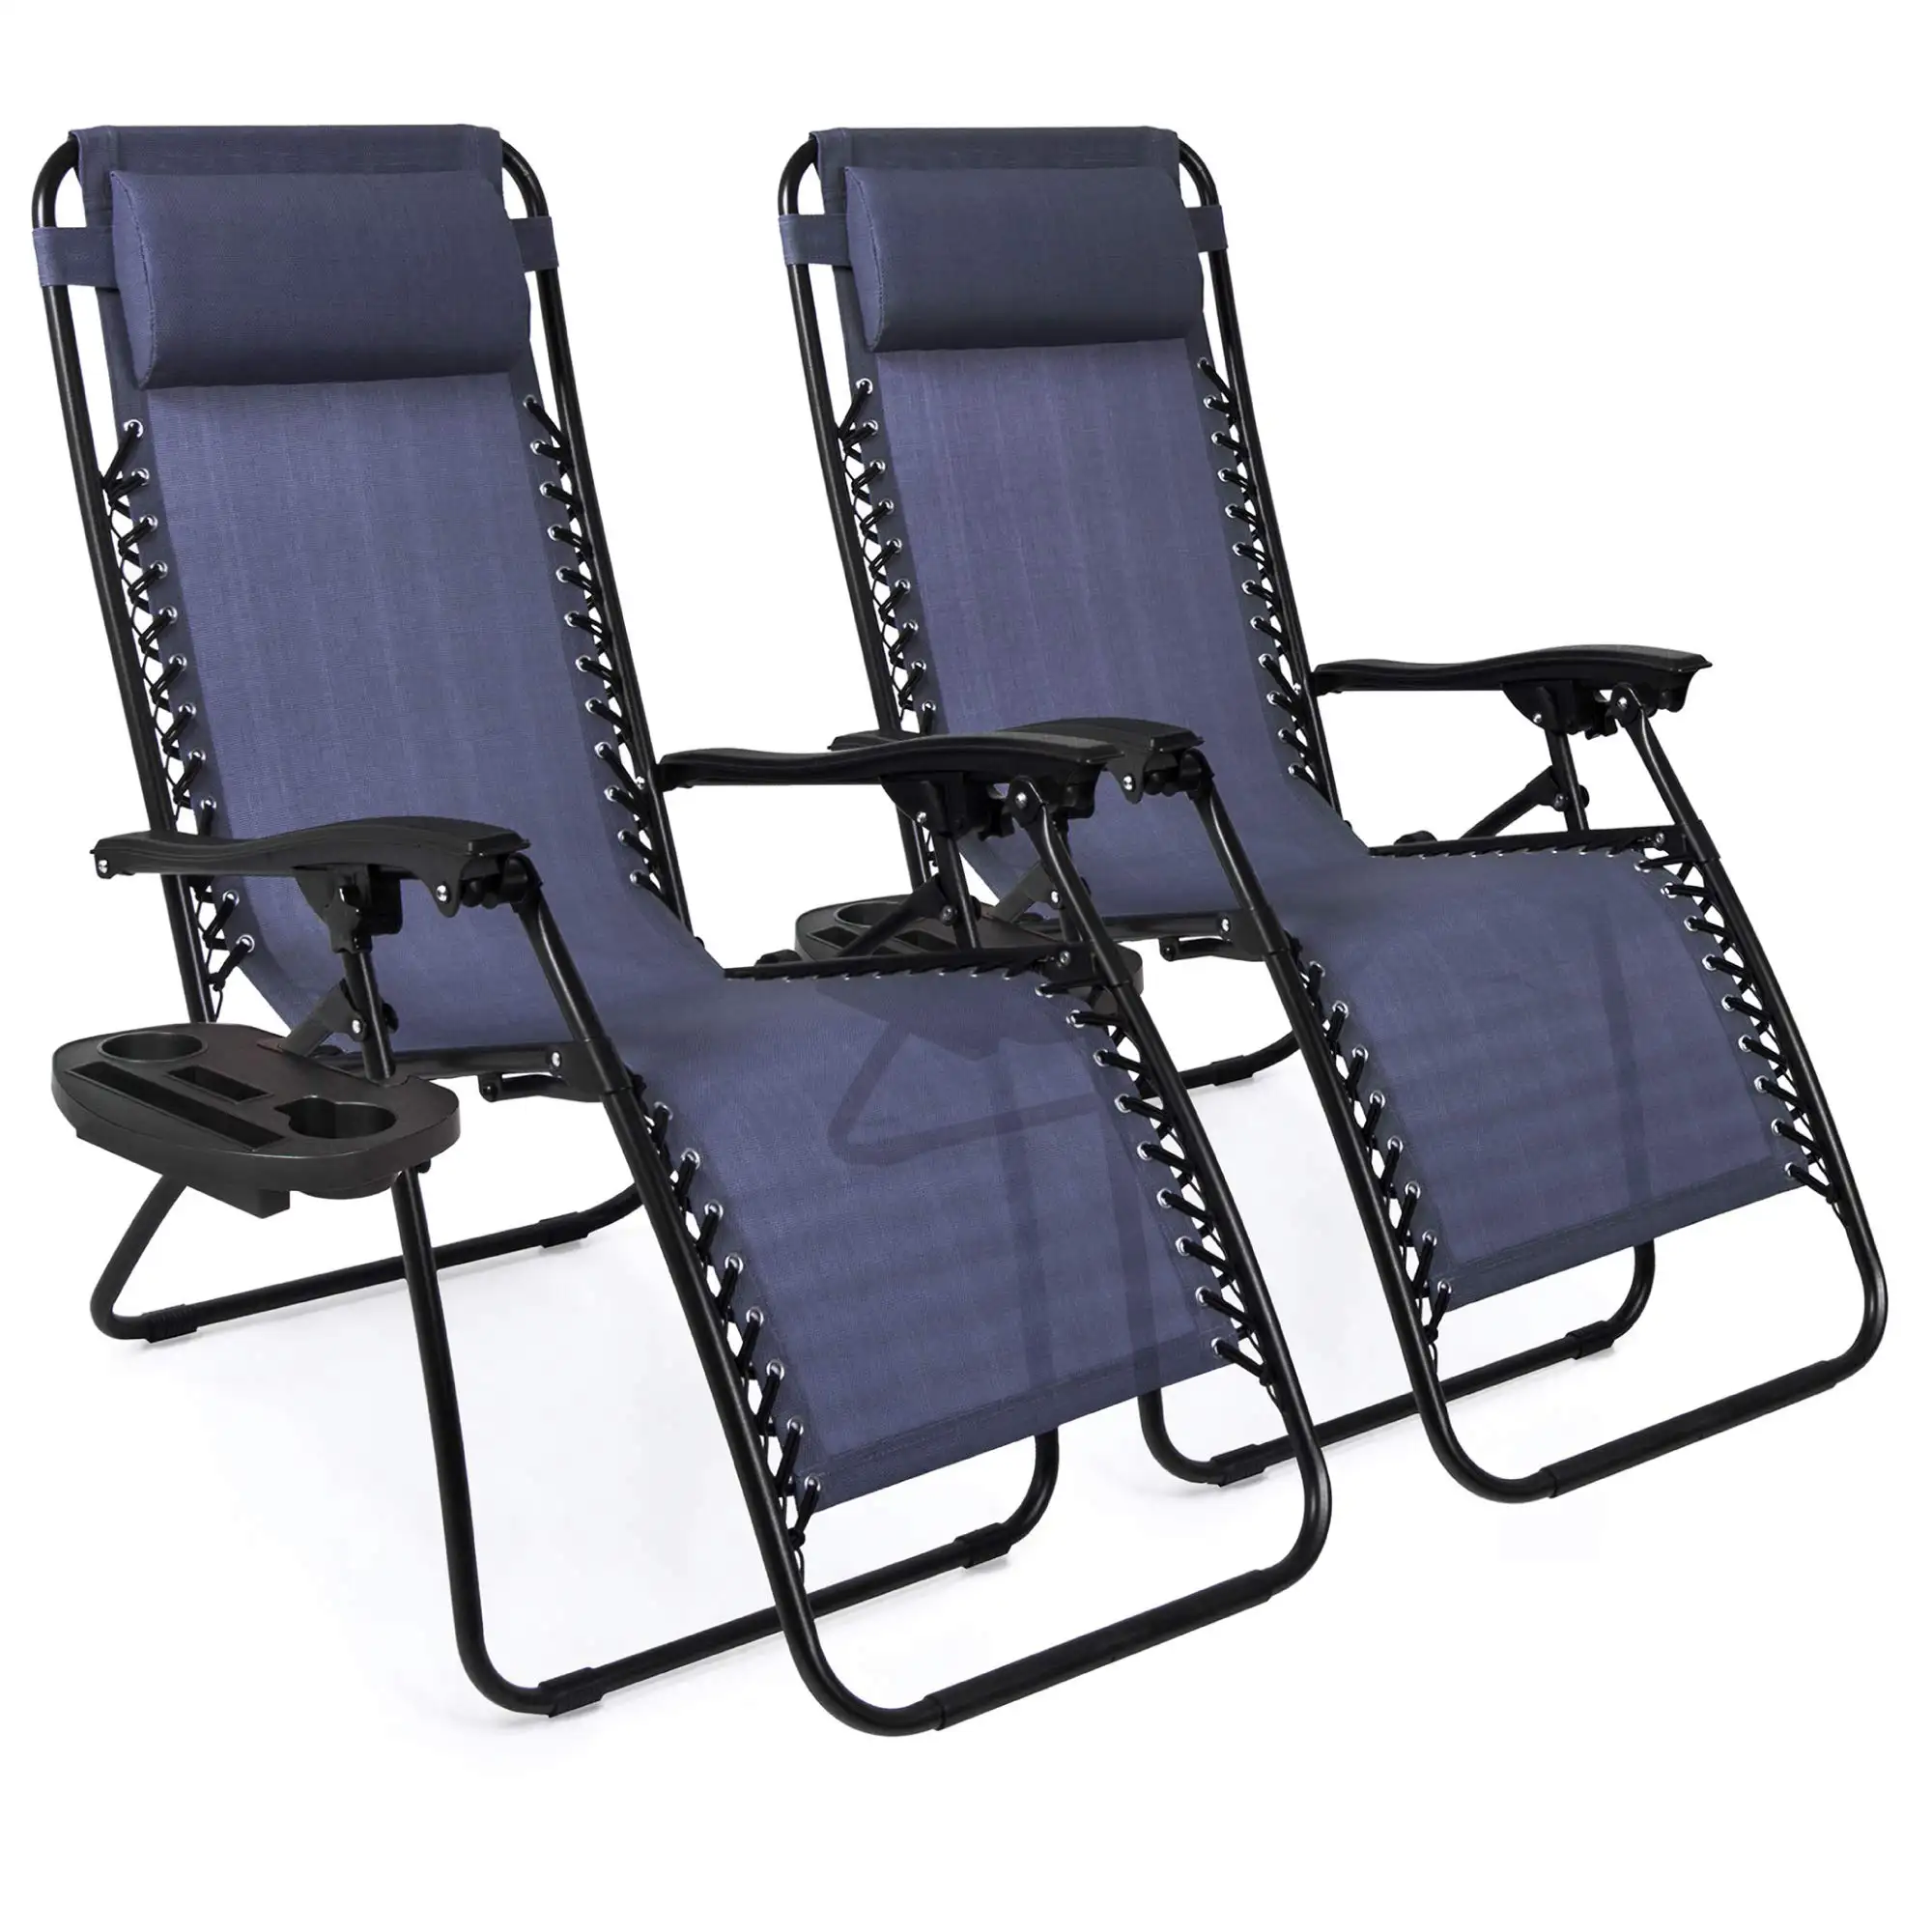 Aluminium Klapp camping Beach Recliner Lounge Zero Gravity Stuhl Übergroße klappbare leichte Garten-Liegestühle im Freien